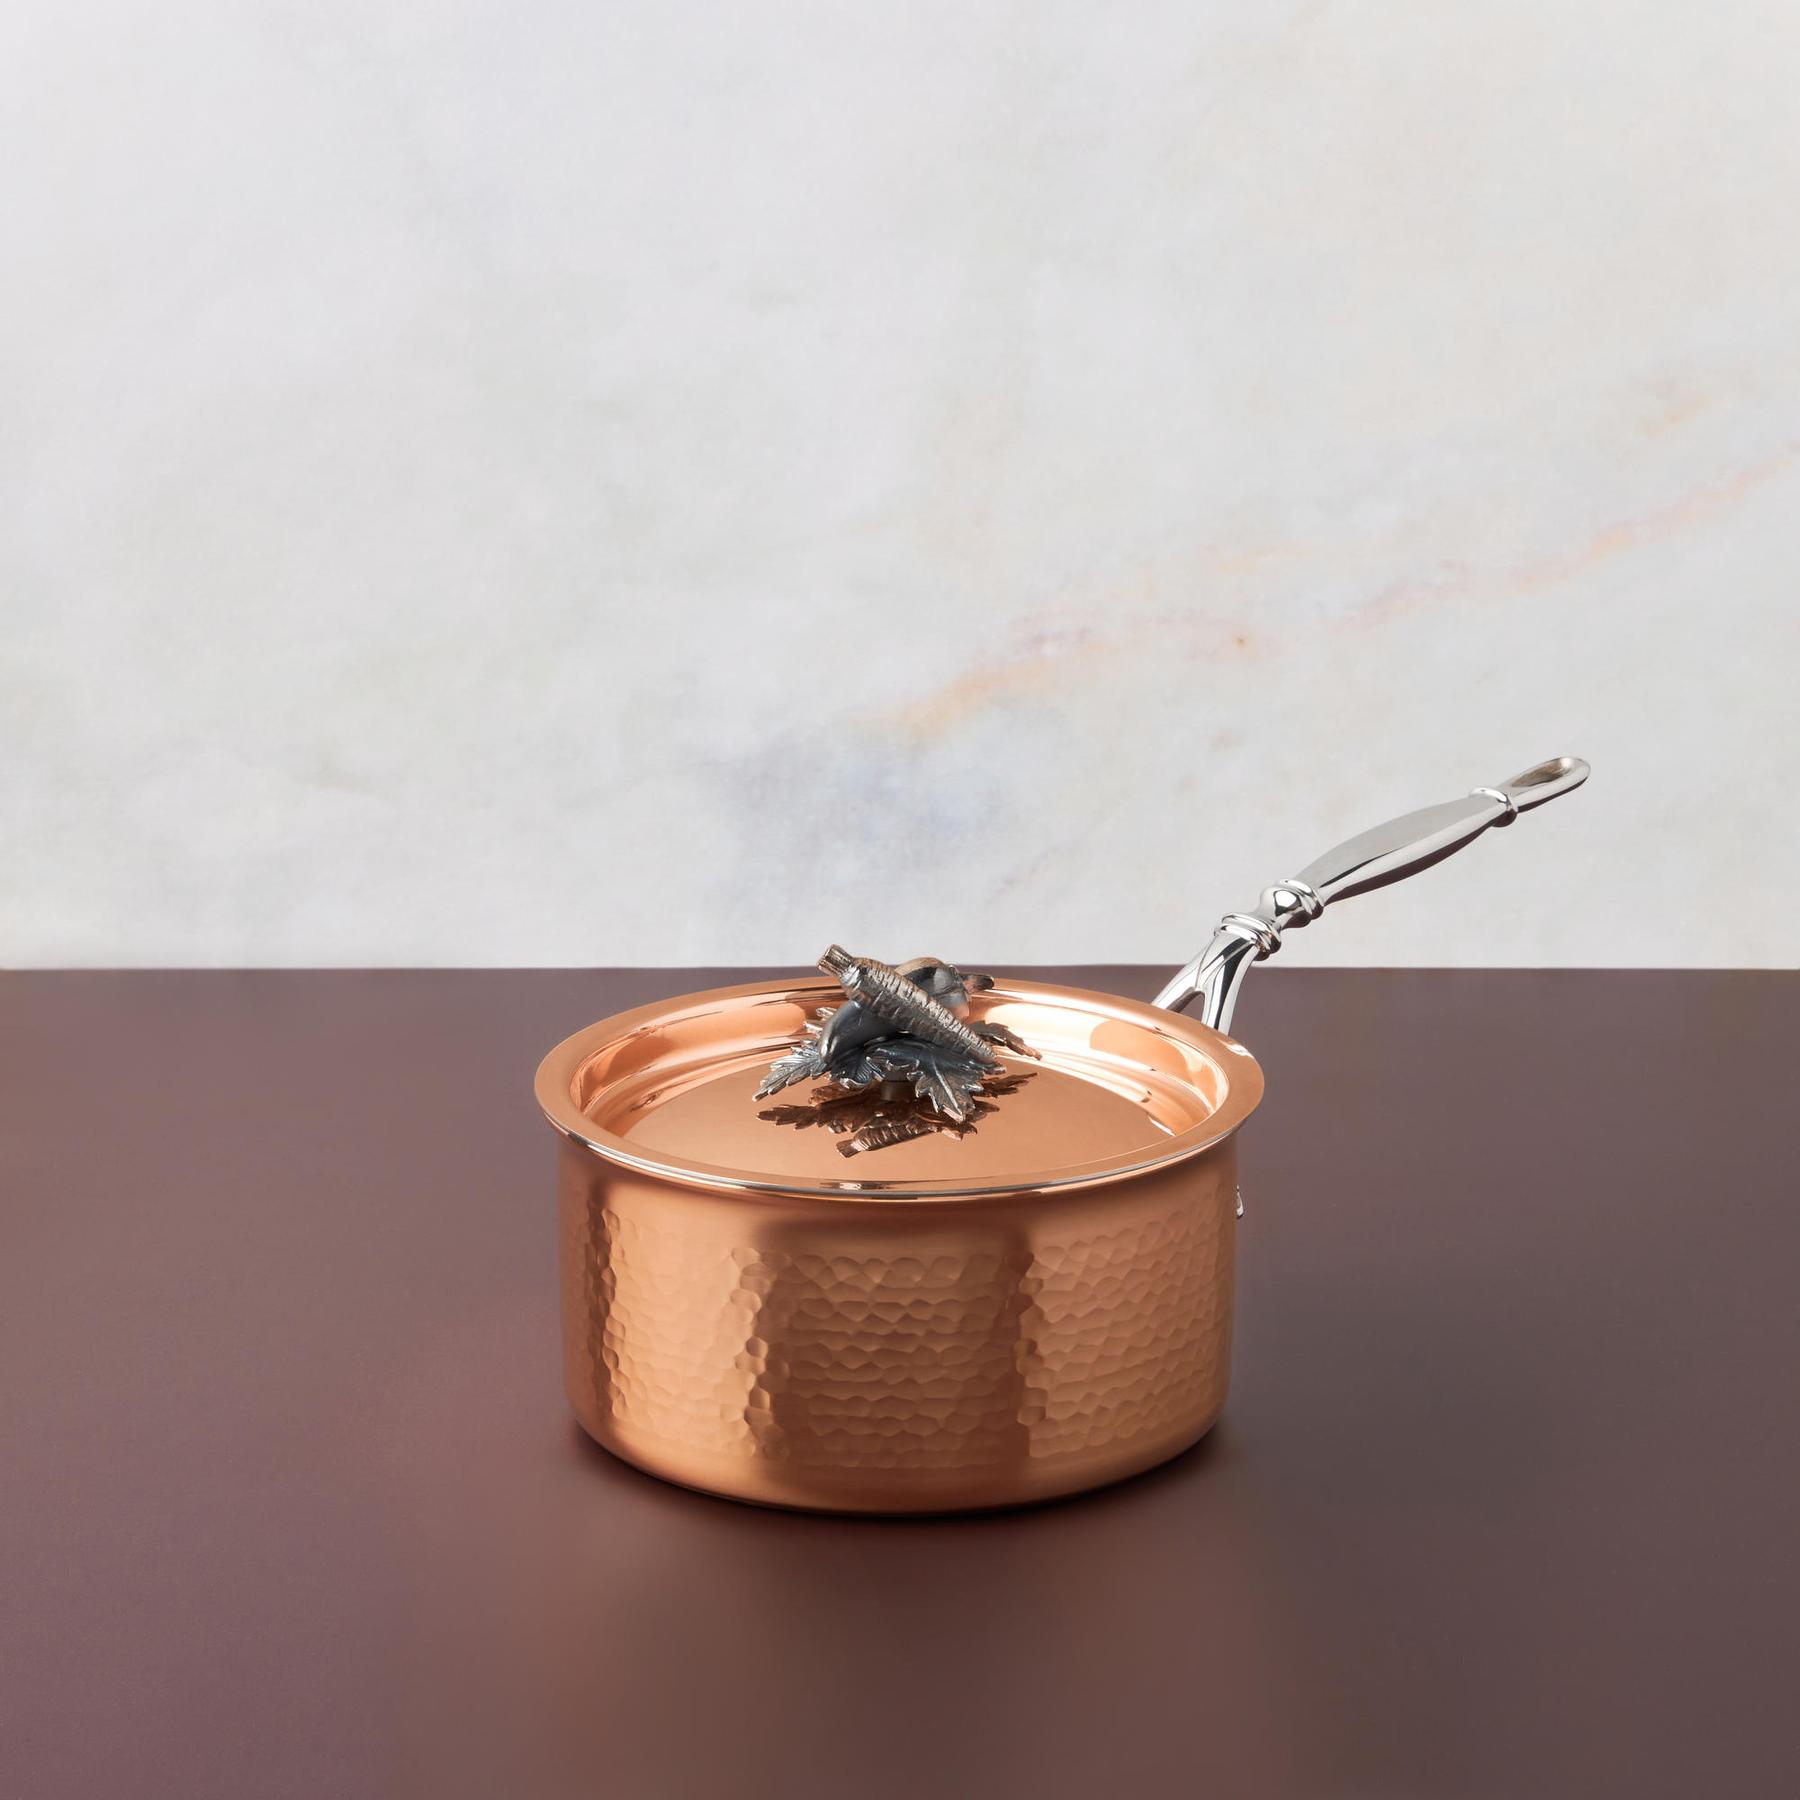 Ruffoni Opus Cupra Copper Saucepan